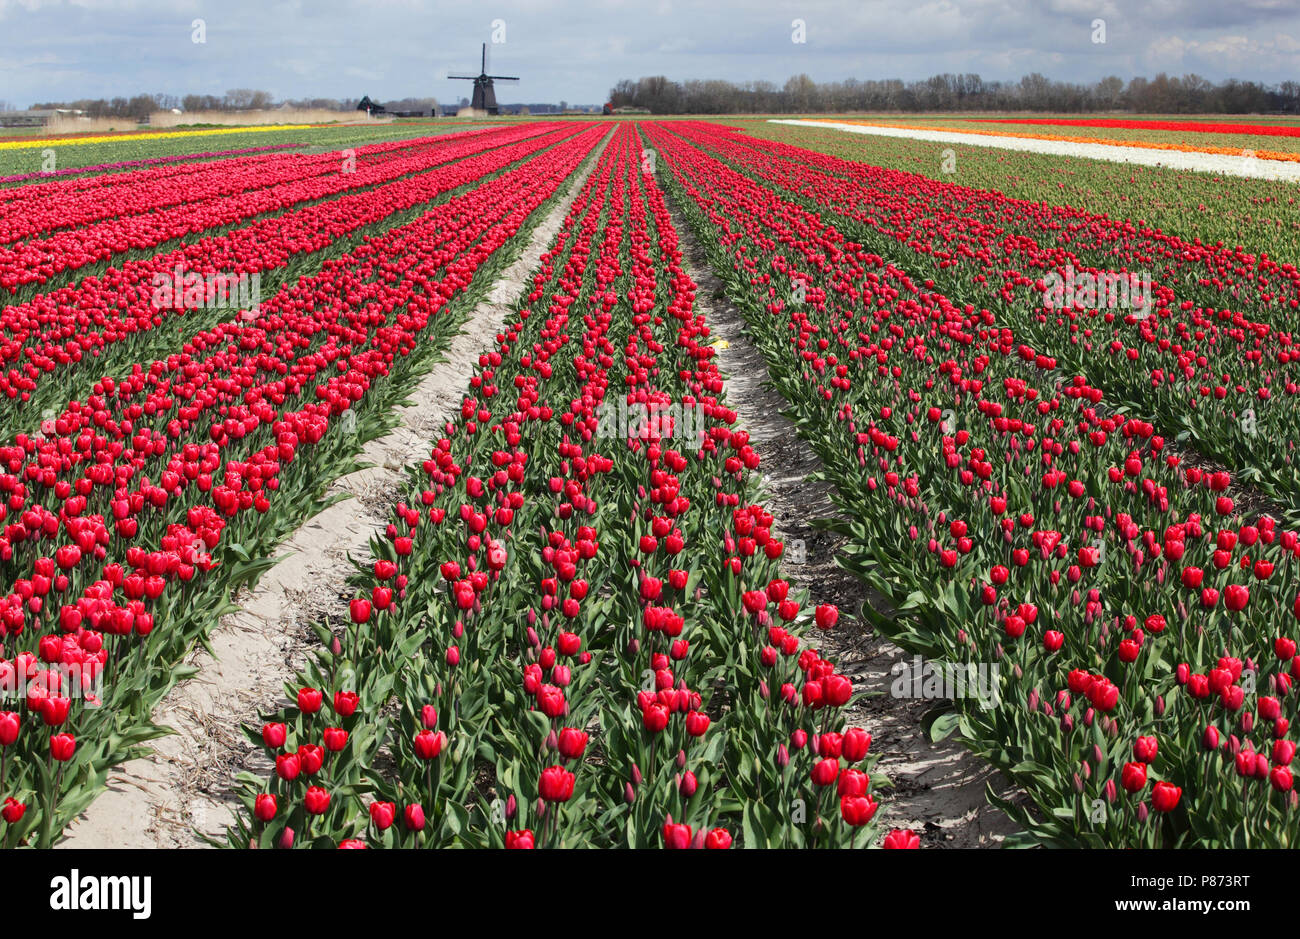 Tulpen bij Schagen. Stock Photo